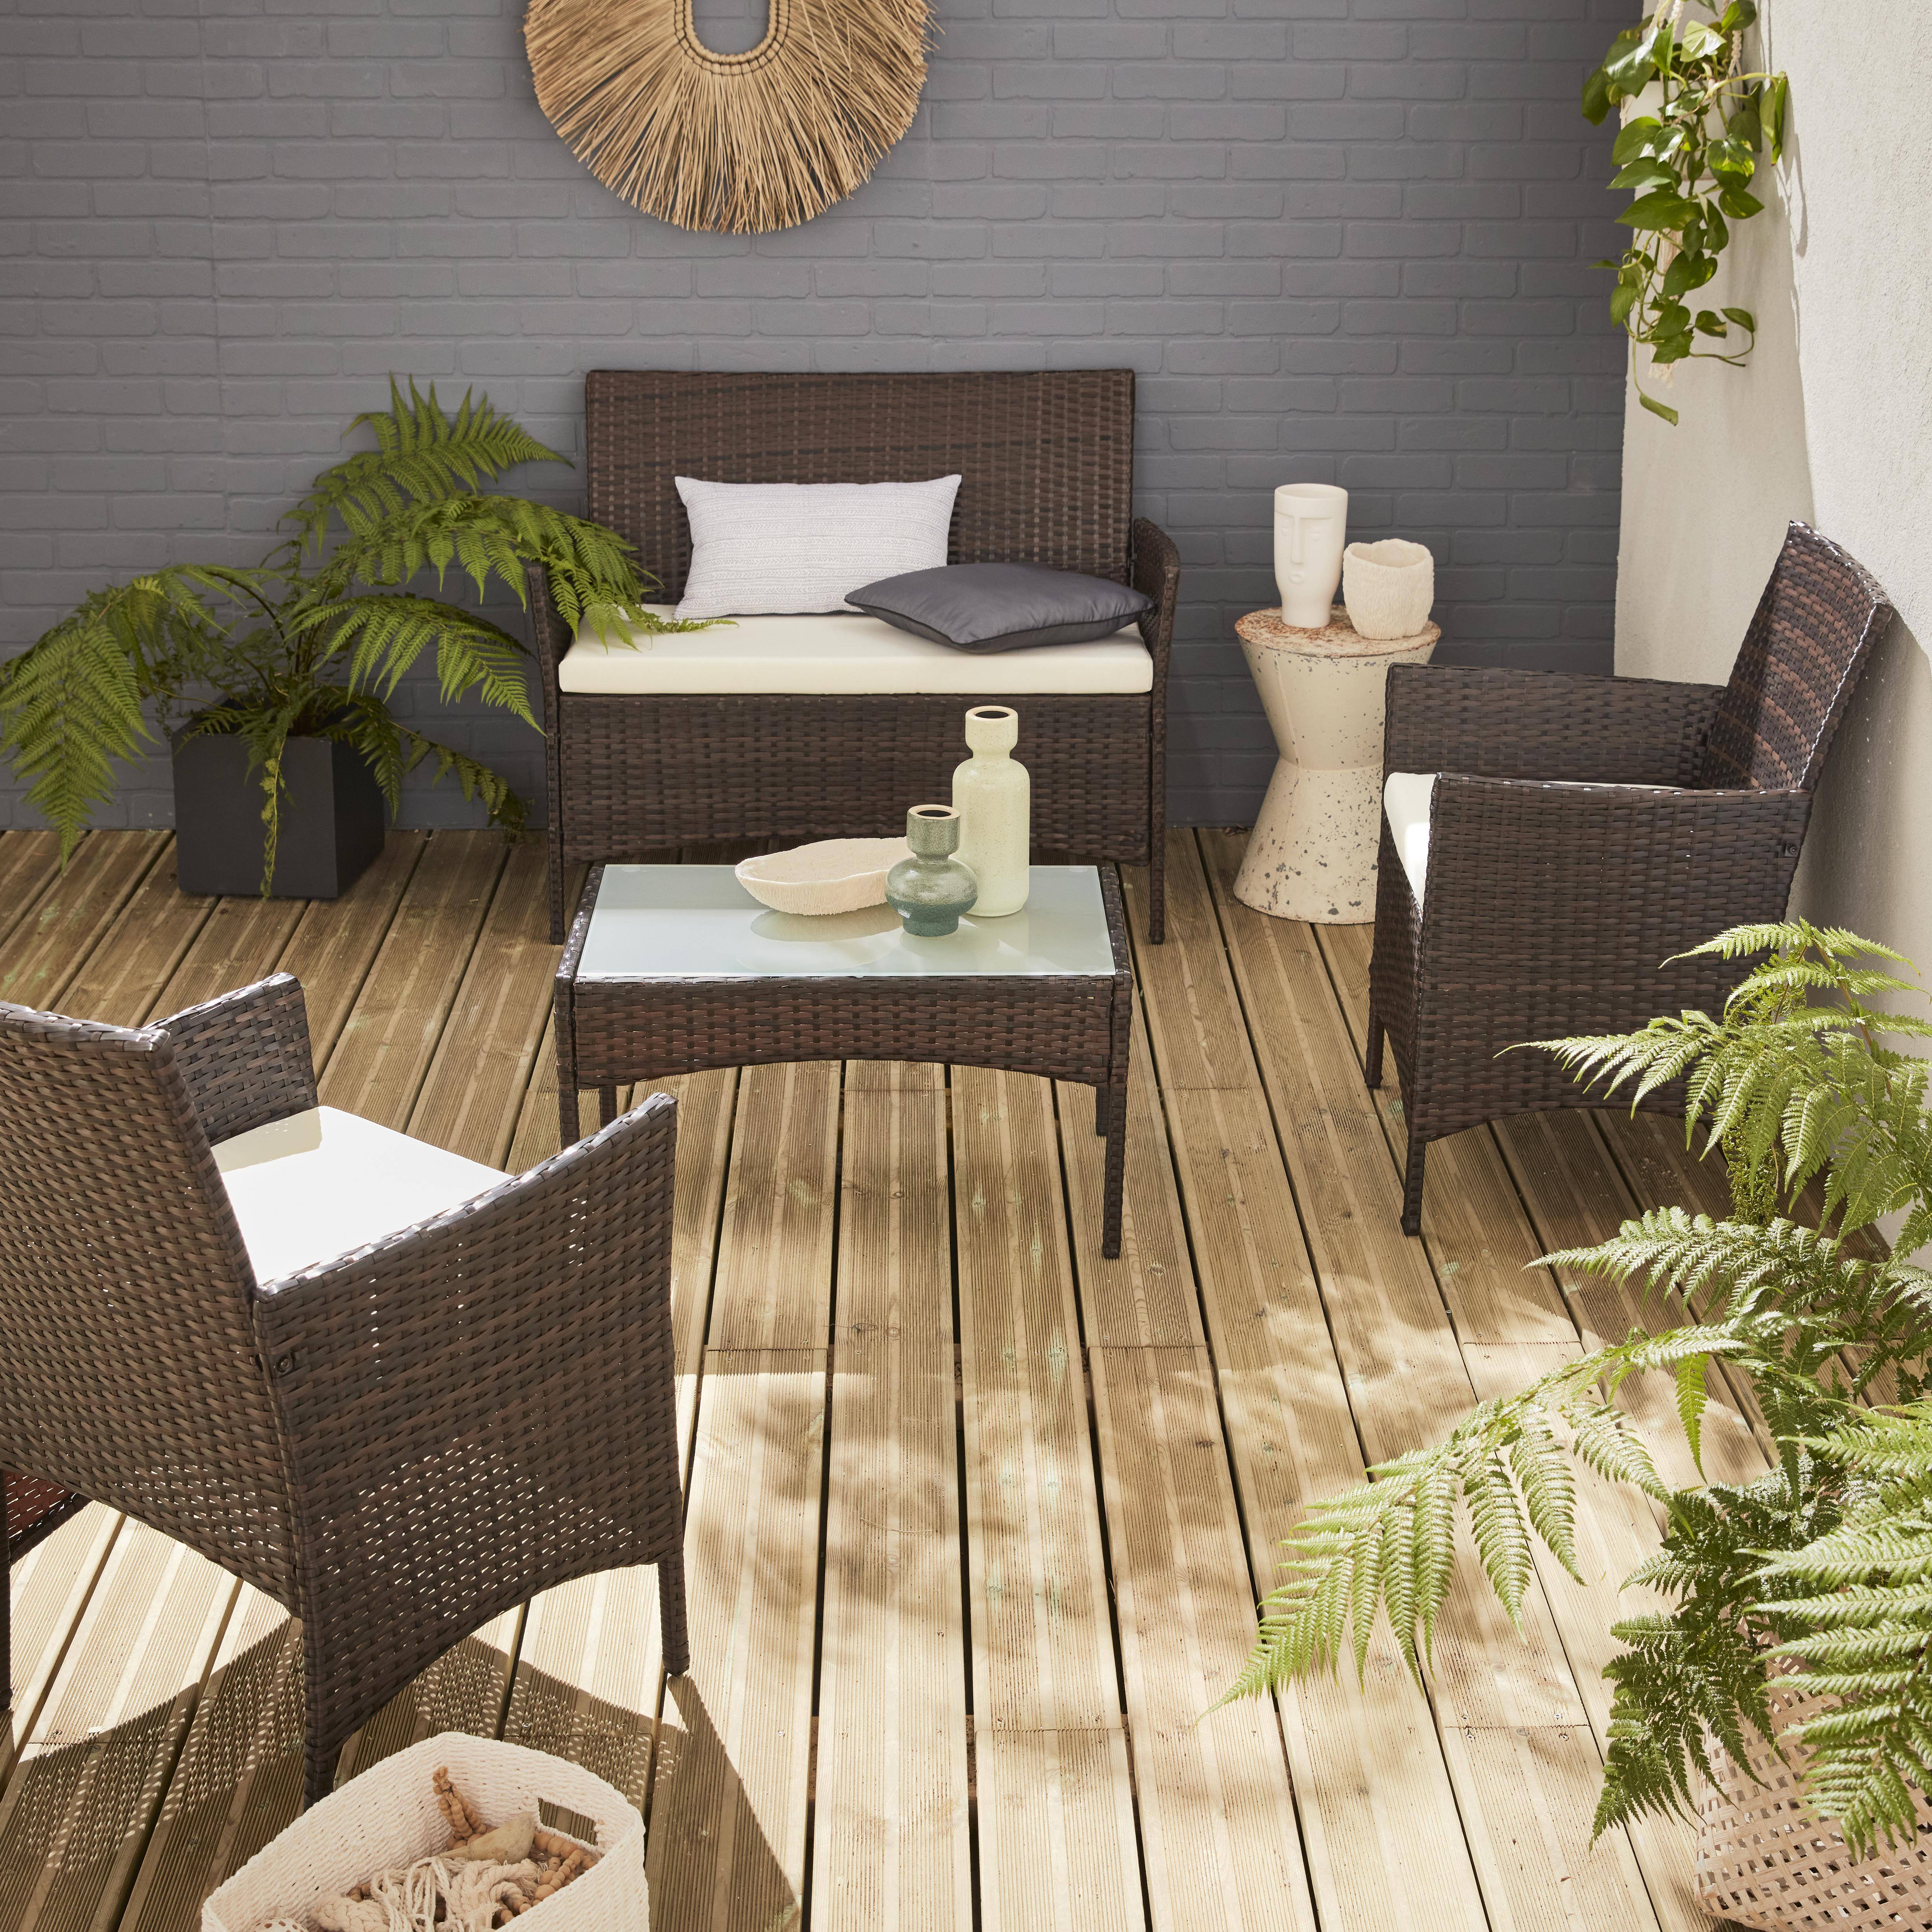 Salotto da giardino in resina intrecciata - modello: Moltés - Cioccolato, cuscini, colore: Ecru - 4 posti - 1 divano, 2 poltrone, un tavolino  basso Photo1